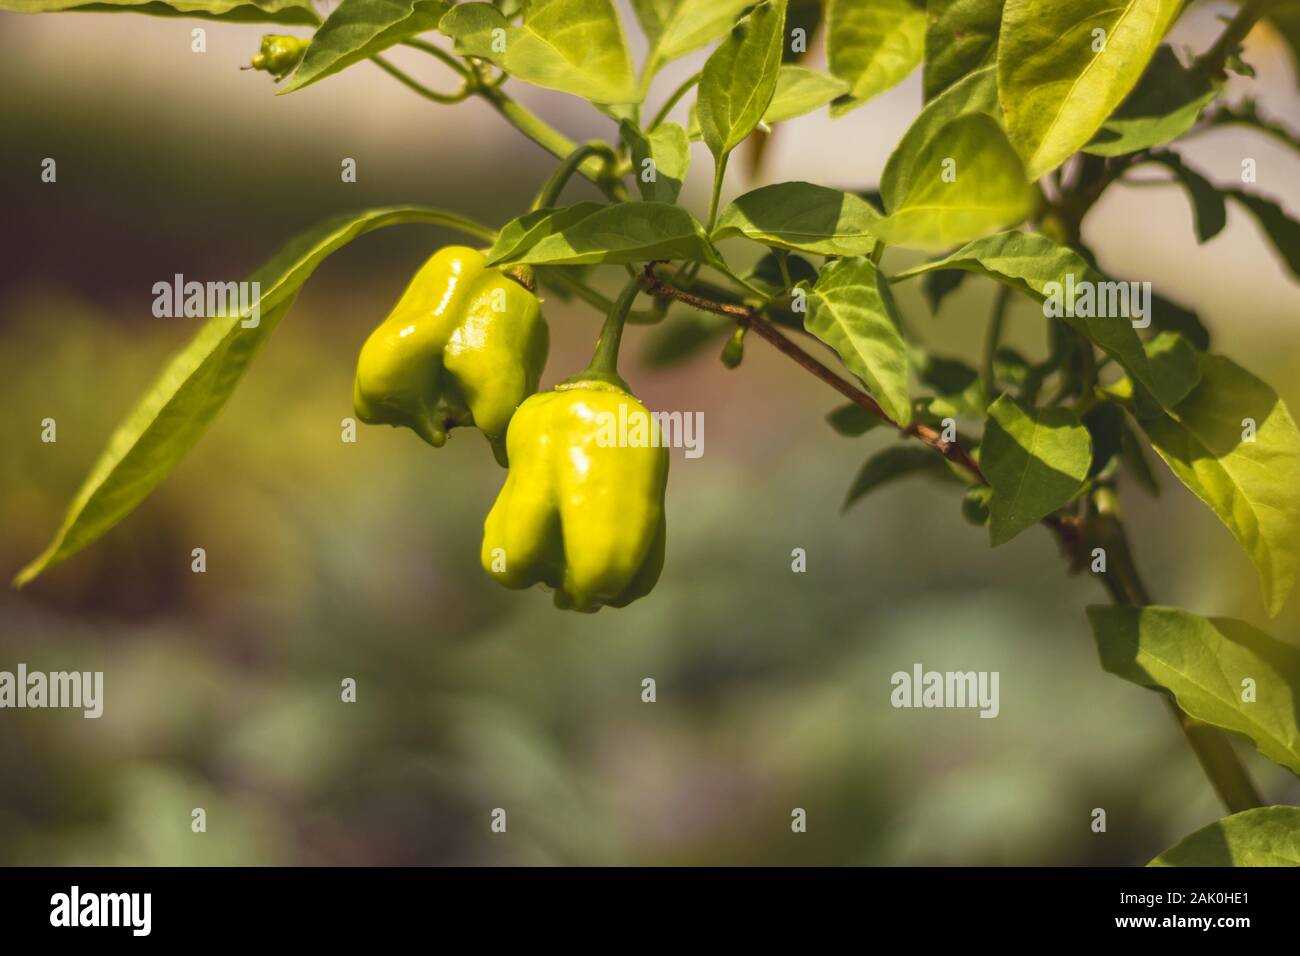 Capsicum - jeune poivron vert sur plante avec feuilles, dans le jardin, sur fond vert Banque D'Images